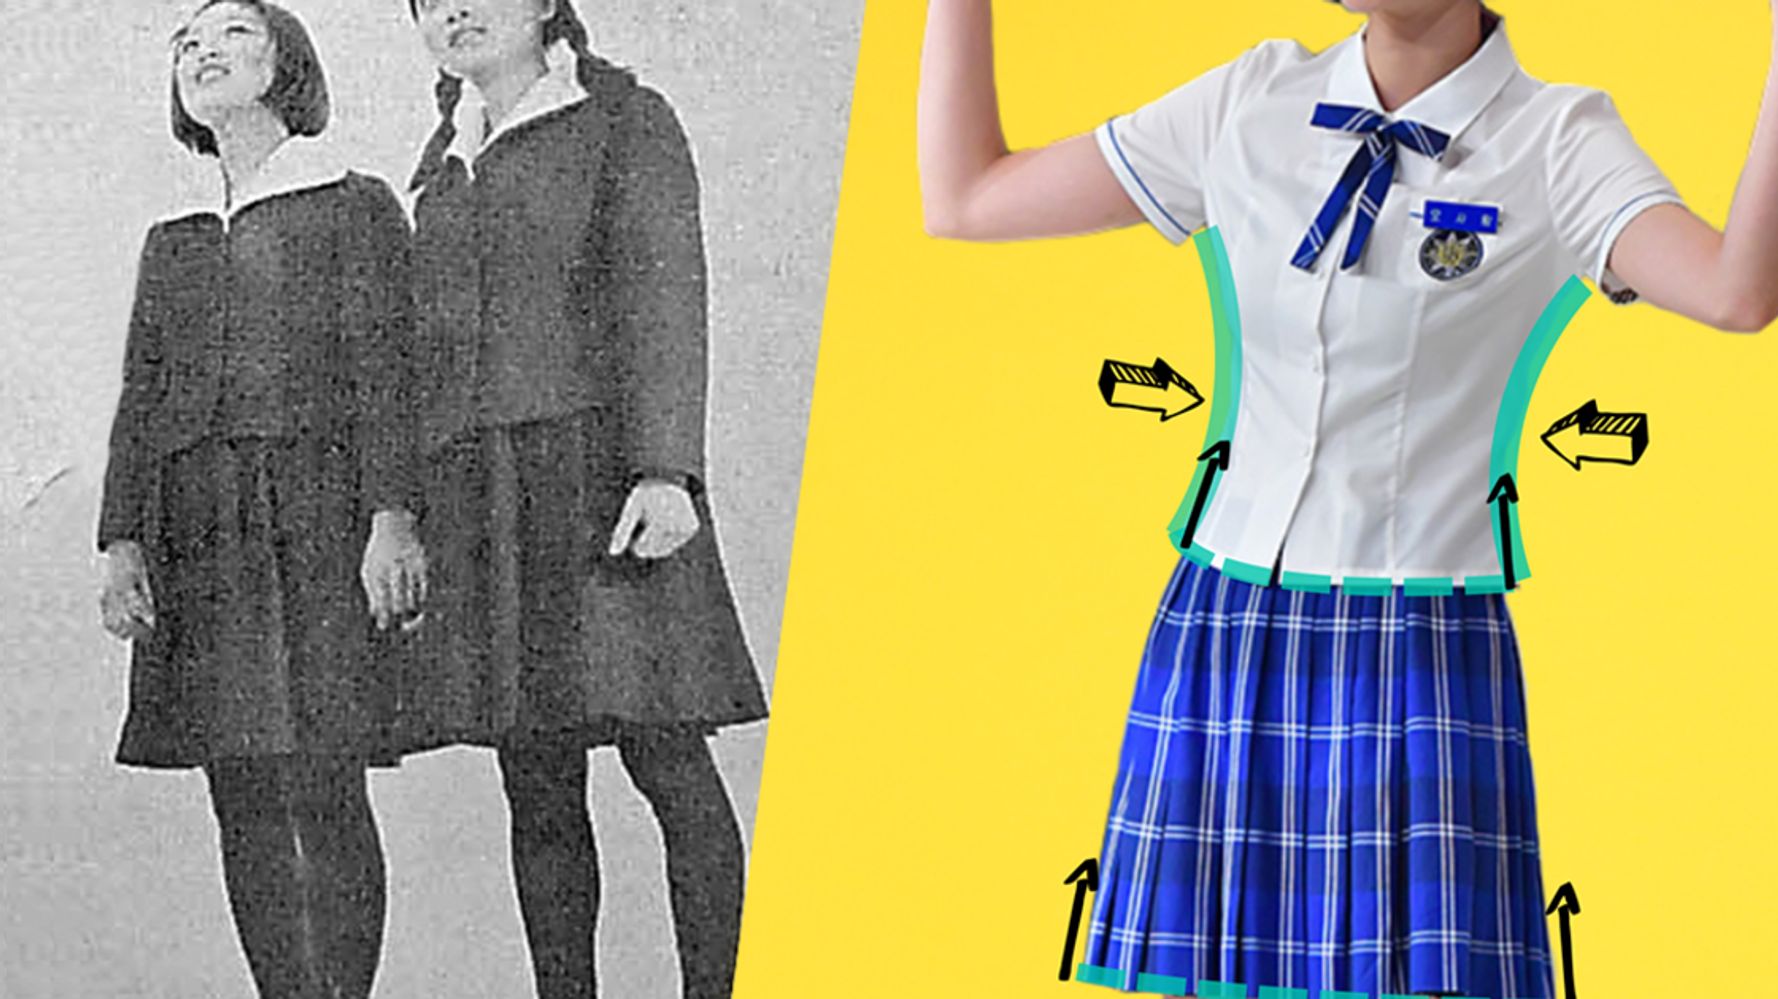 女子生徒の制服が 体にぴったりすぎる 韓国で不満の声が続出 ハフポスト